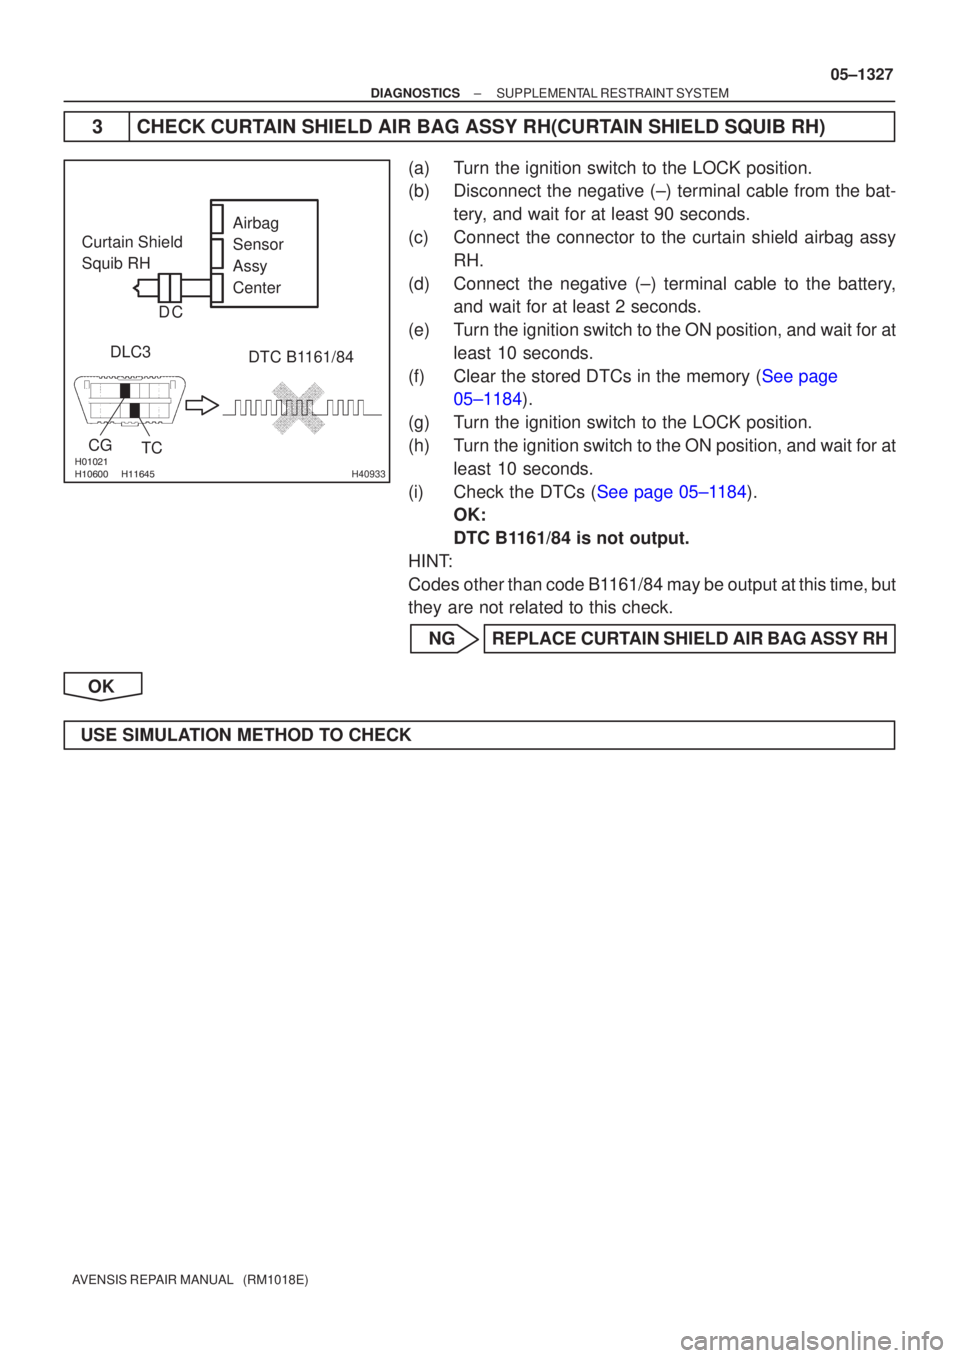 TOYOTA AVENSIS 2005  Service Repair Manual 
 H40933
Airbag
Sensor
Assy
Center
Curtain Shield
Squib RH
DLC3
TC
CG
DTC B1161/84
C
D
±
DIAGNOSTICS SUPPLEMENTAL RESTRAINT SYSTEM
05±1327
AVENSIS REPAIR MANUAL   (RM1018E)
3 CHECK